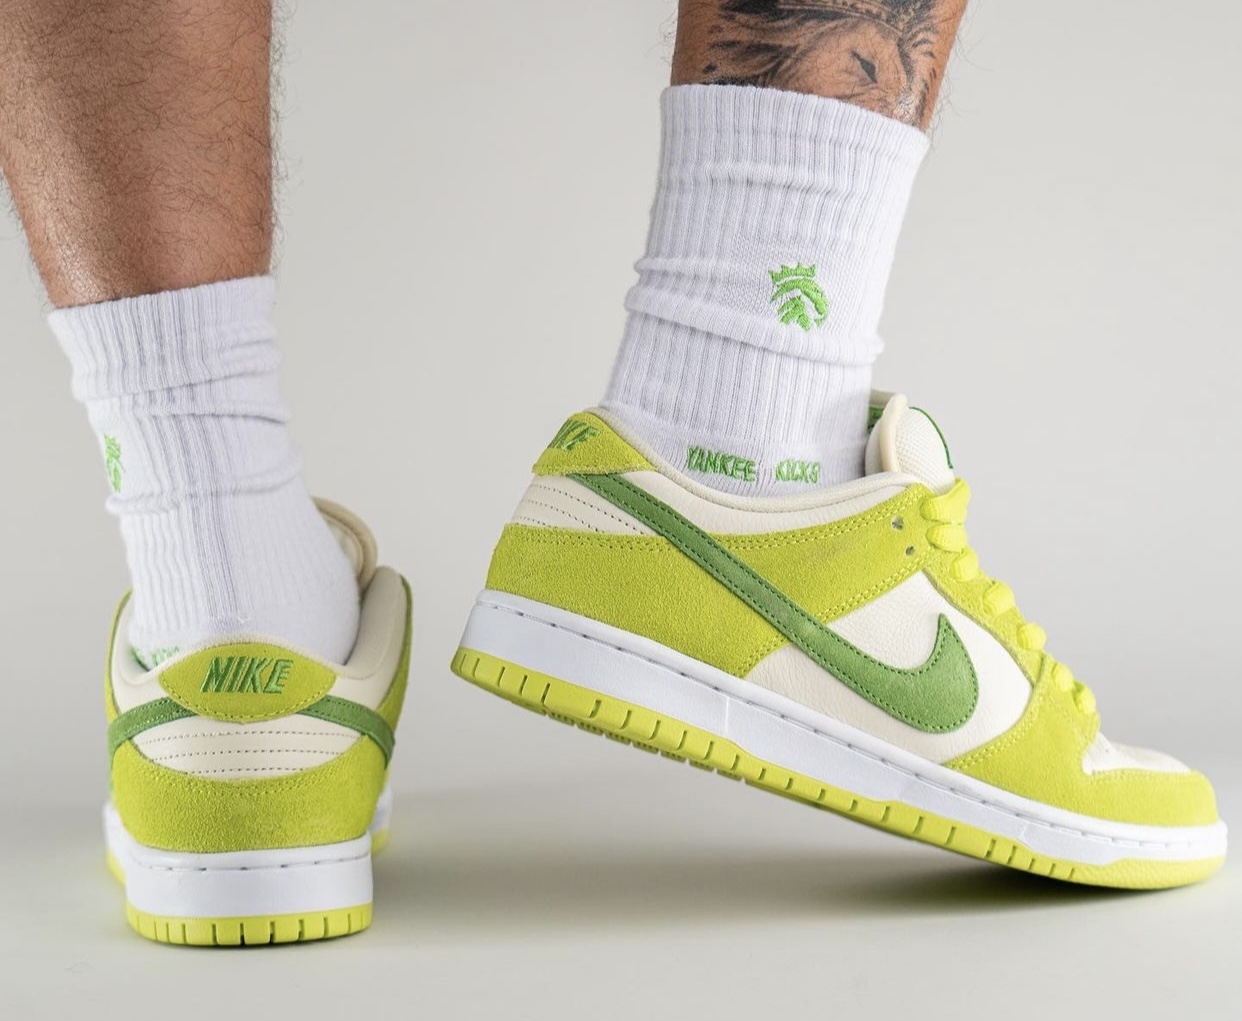 Nike SB Dunk Low Green Apple DM0807-300 Release Date On-Feet